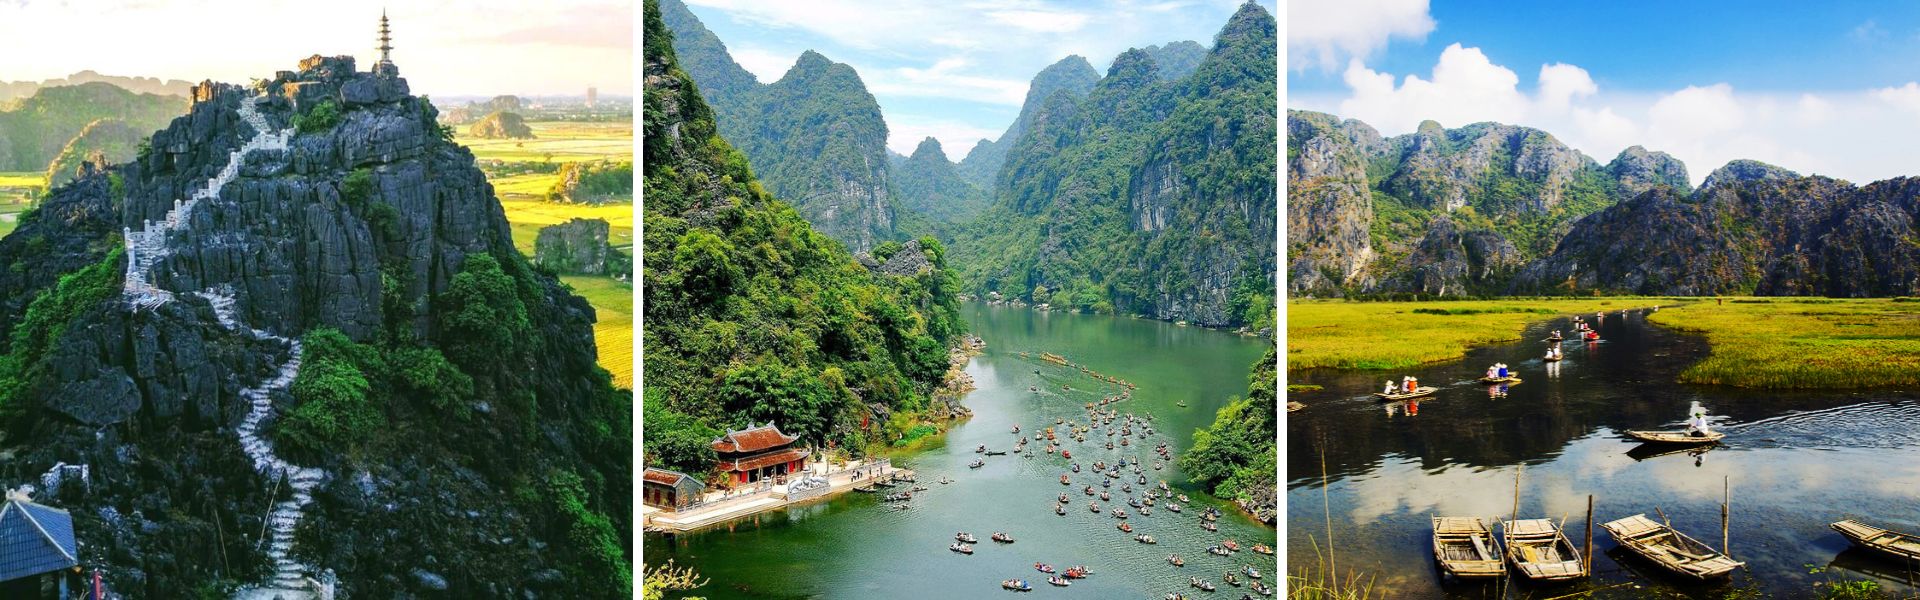 Ninh Binh:  Sehenswürdigkeiten und Aktivitäten | Vietnam Reisen